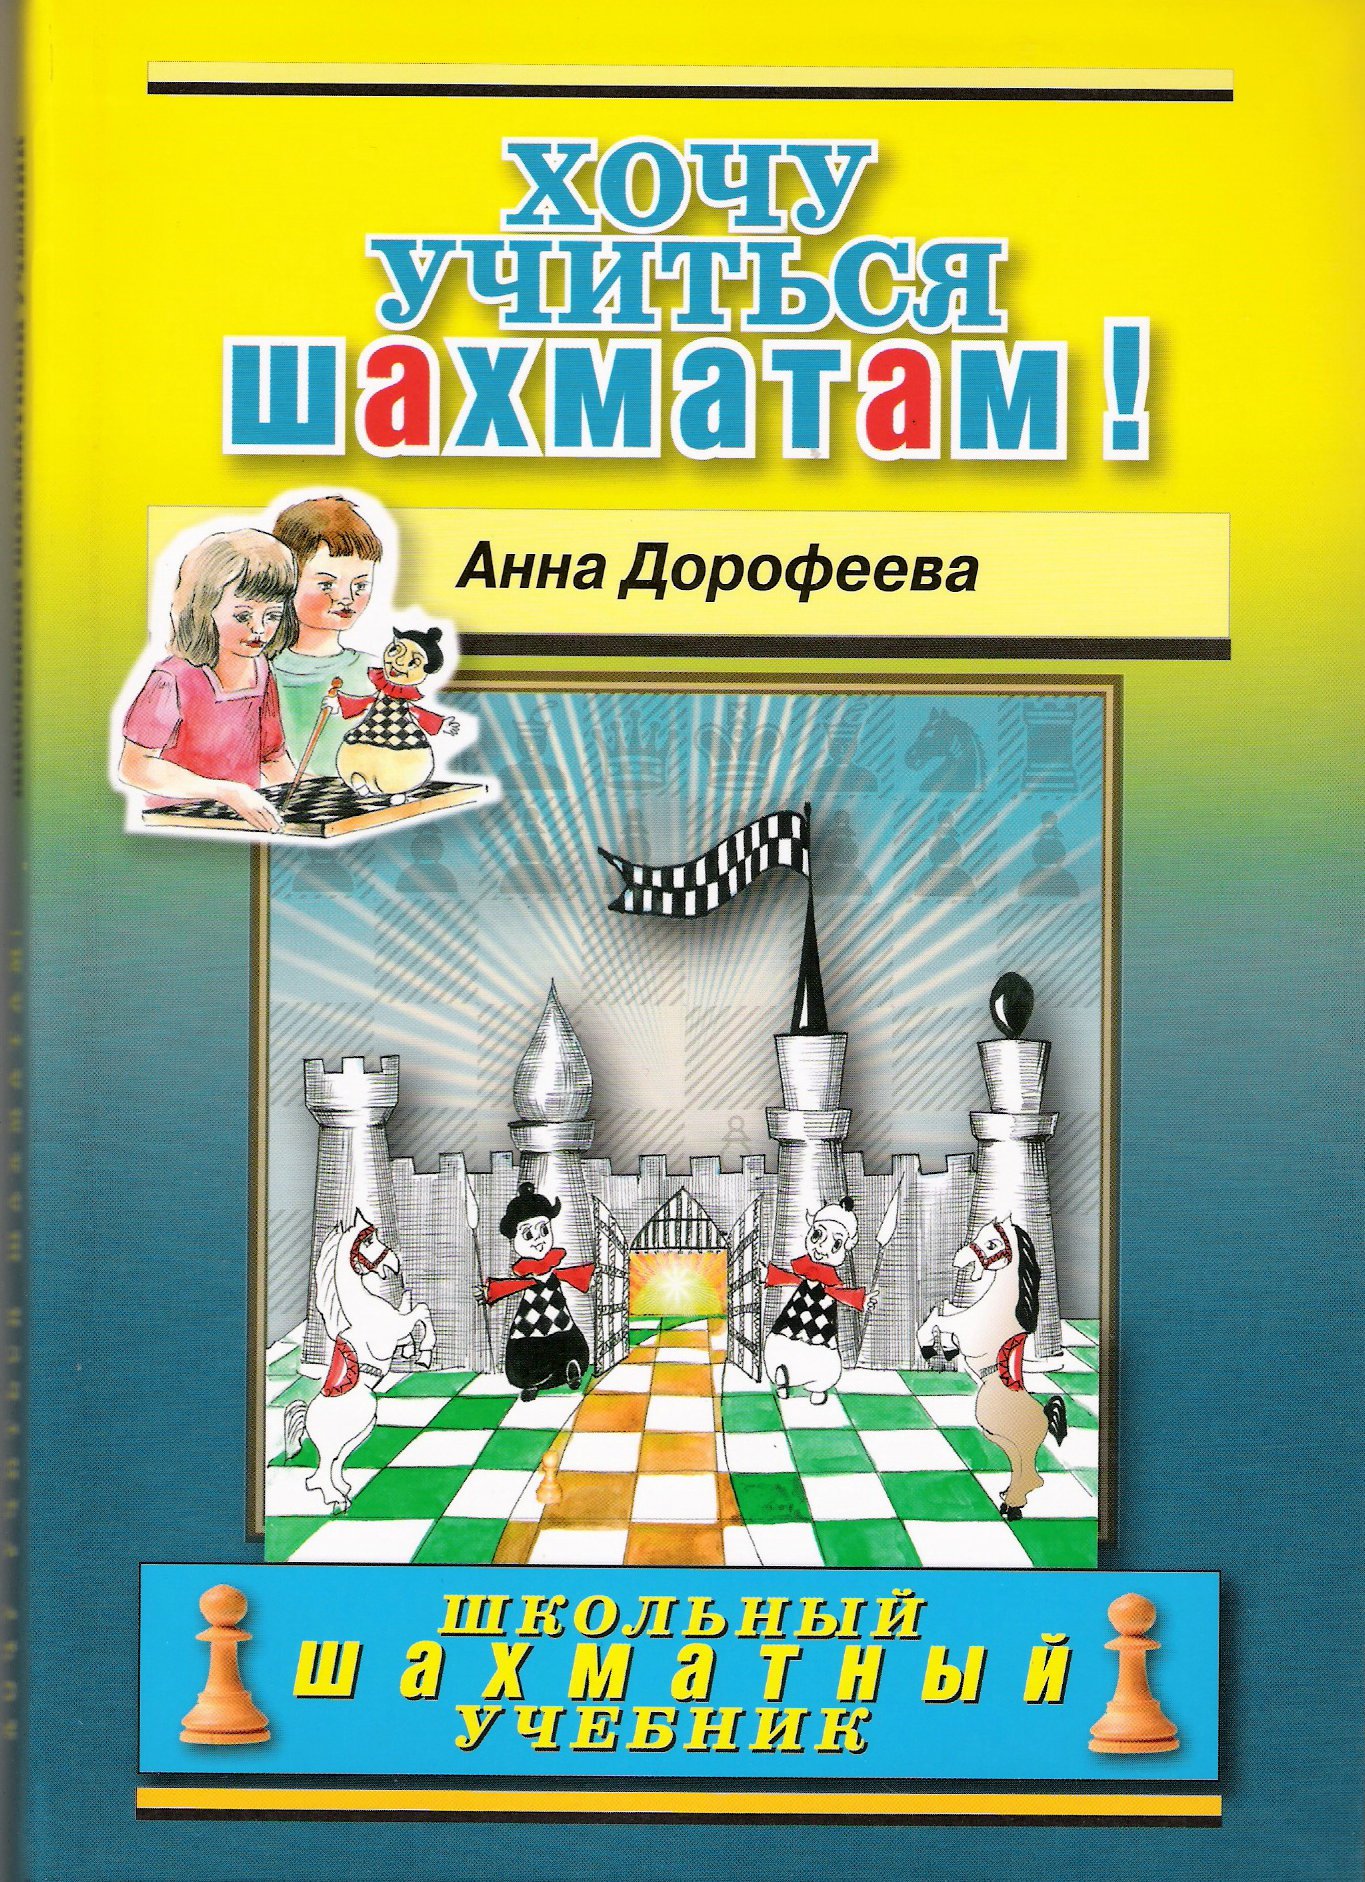 Книга по шахматам для детей скачать